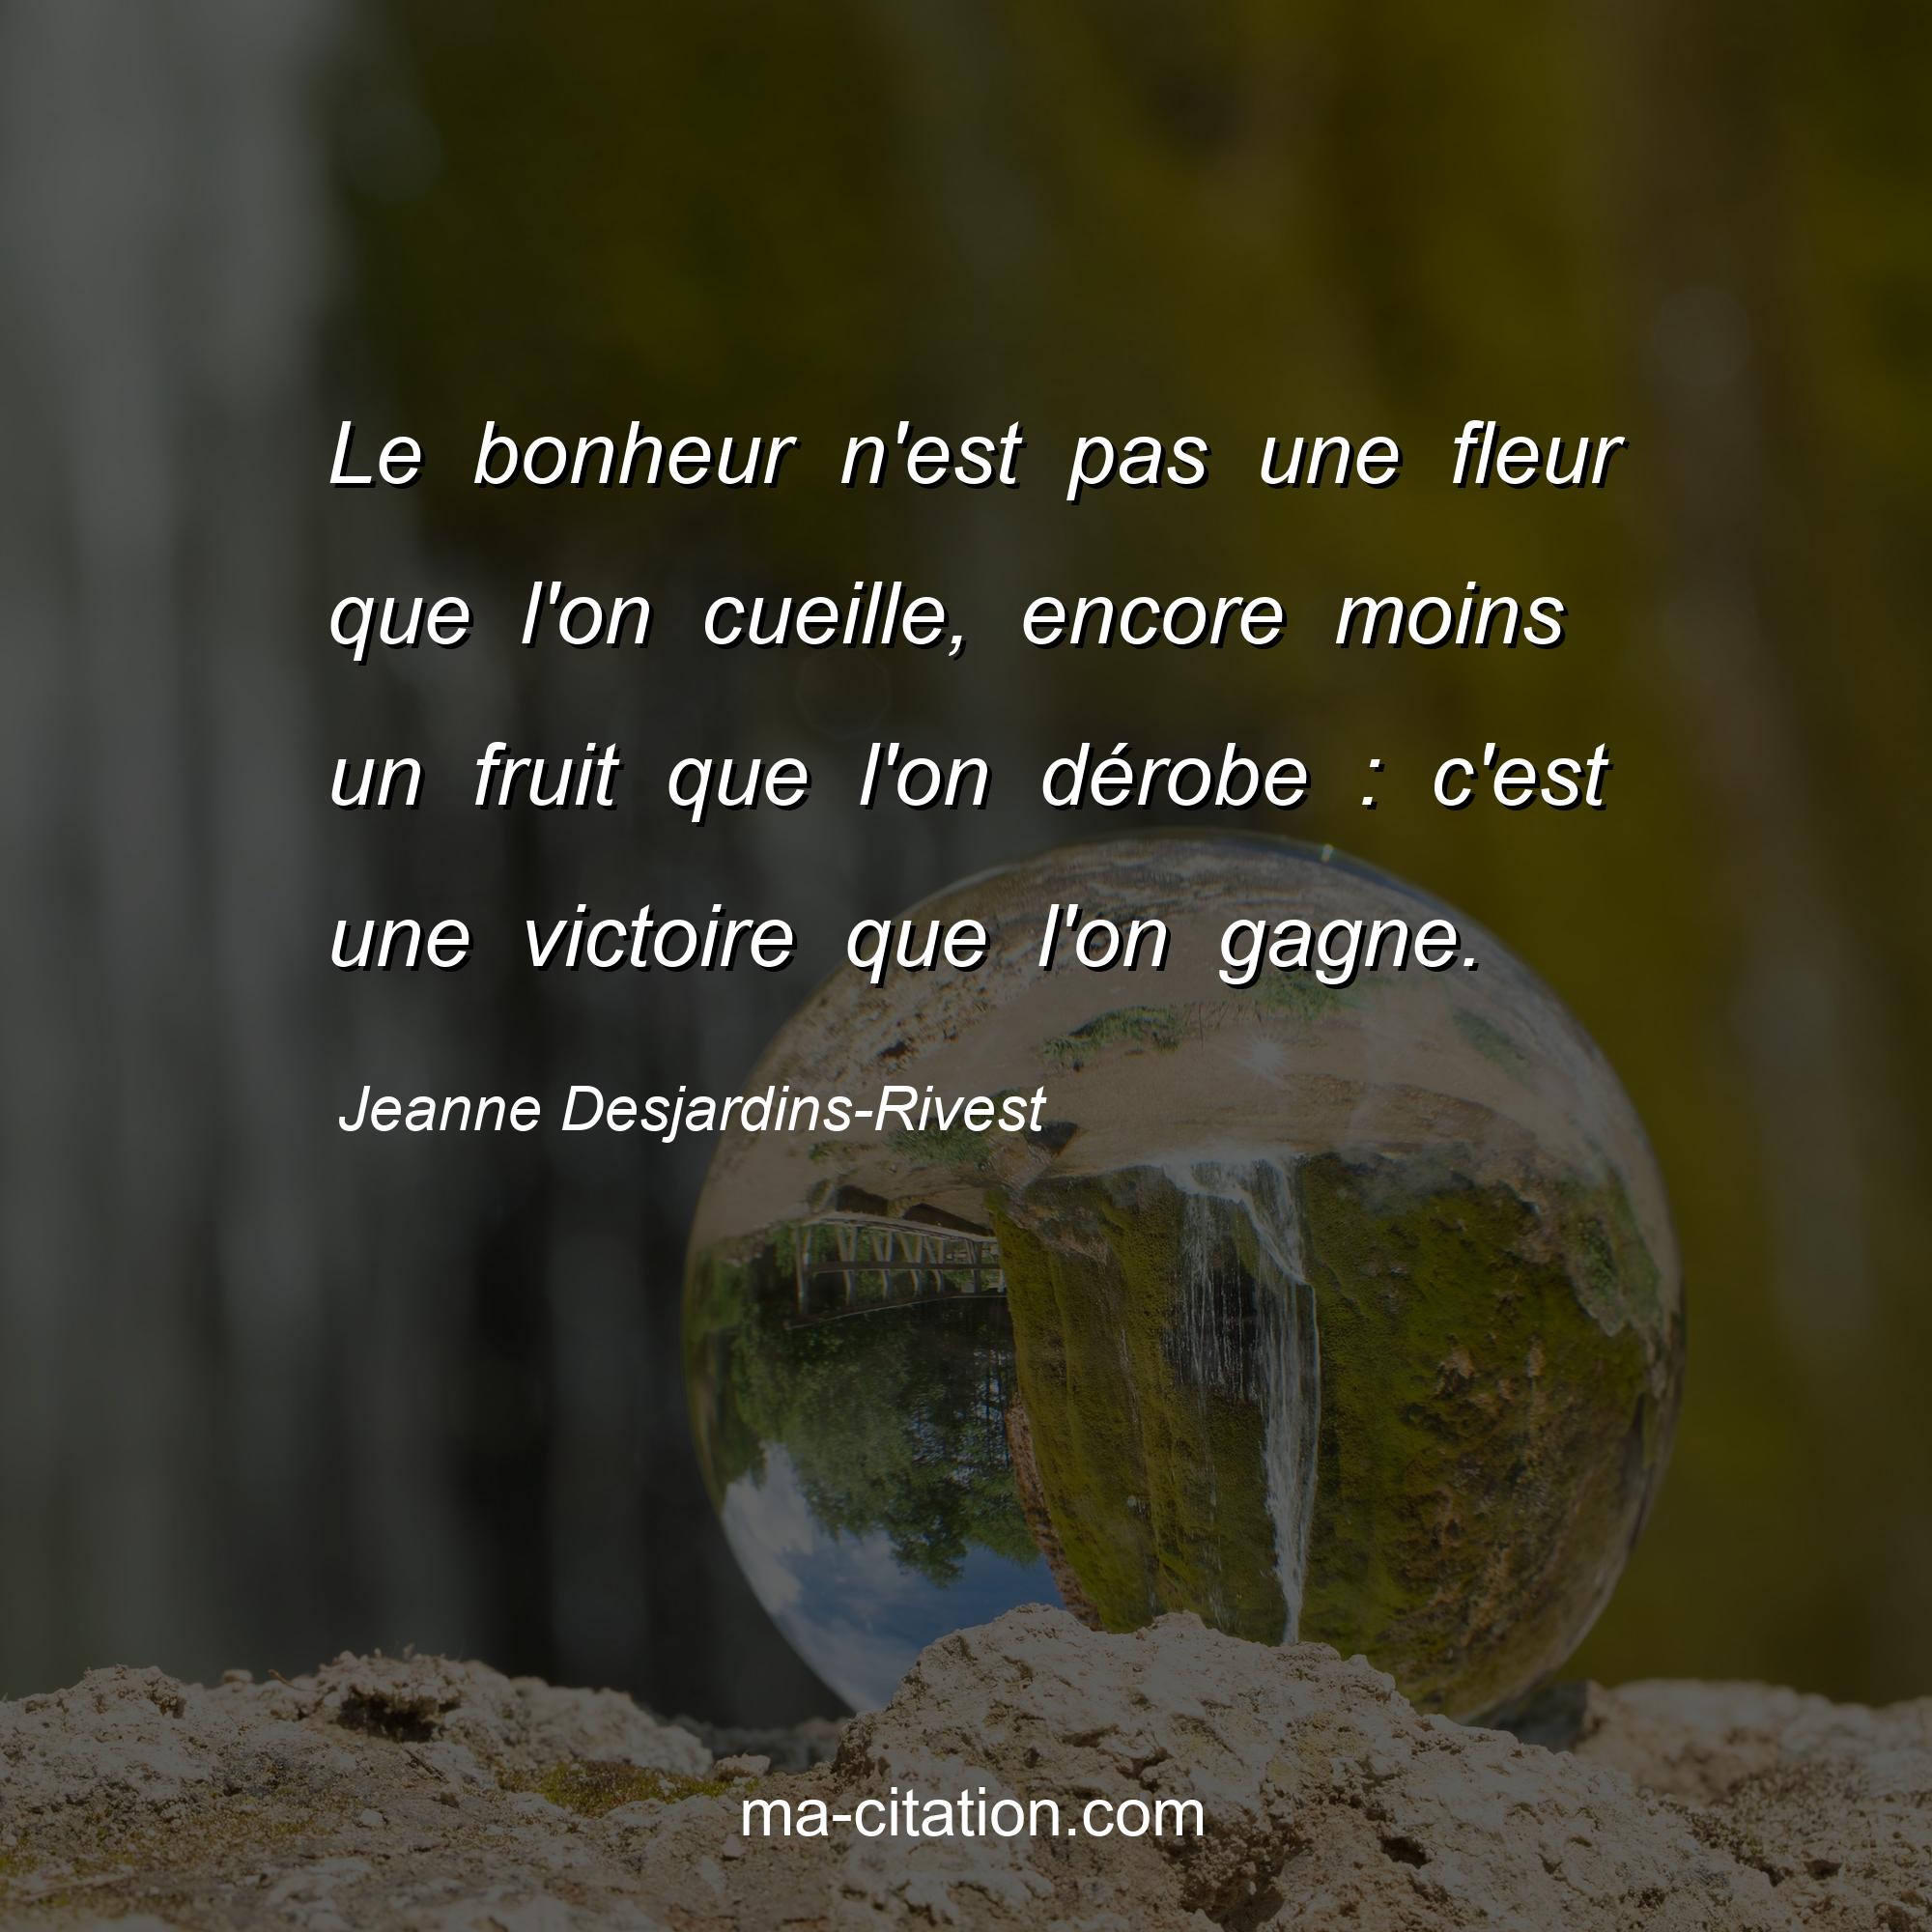 Jeanne Desjardins-Rivest : Le bonheur n'est pas une fleur que l'on cueille, encore moins un fruit que l'on dérobe : c'est une victoire que l'on gagne.